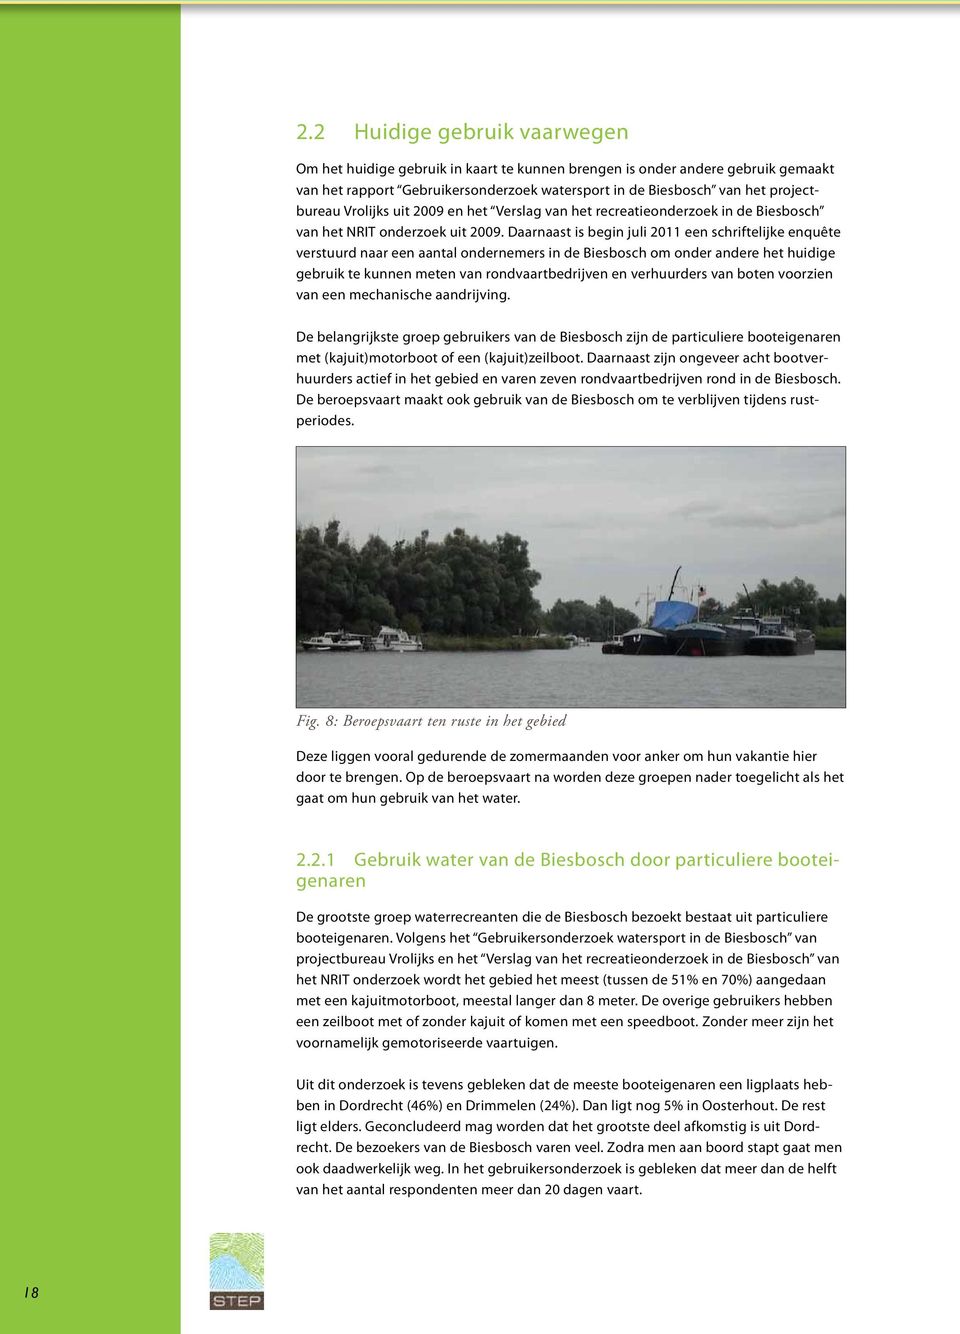 Daarnaast is begin juli 2011 een schriftelijke enquête verstuurd naar een aantal ondernemers in de Biesbosch om onder andere het huidige gebruik te kunnen meten van rondvaartbedrijven en verhuurders